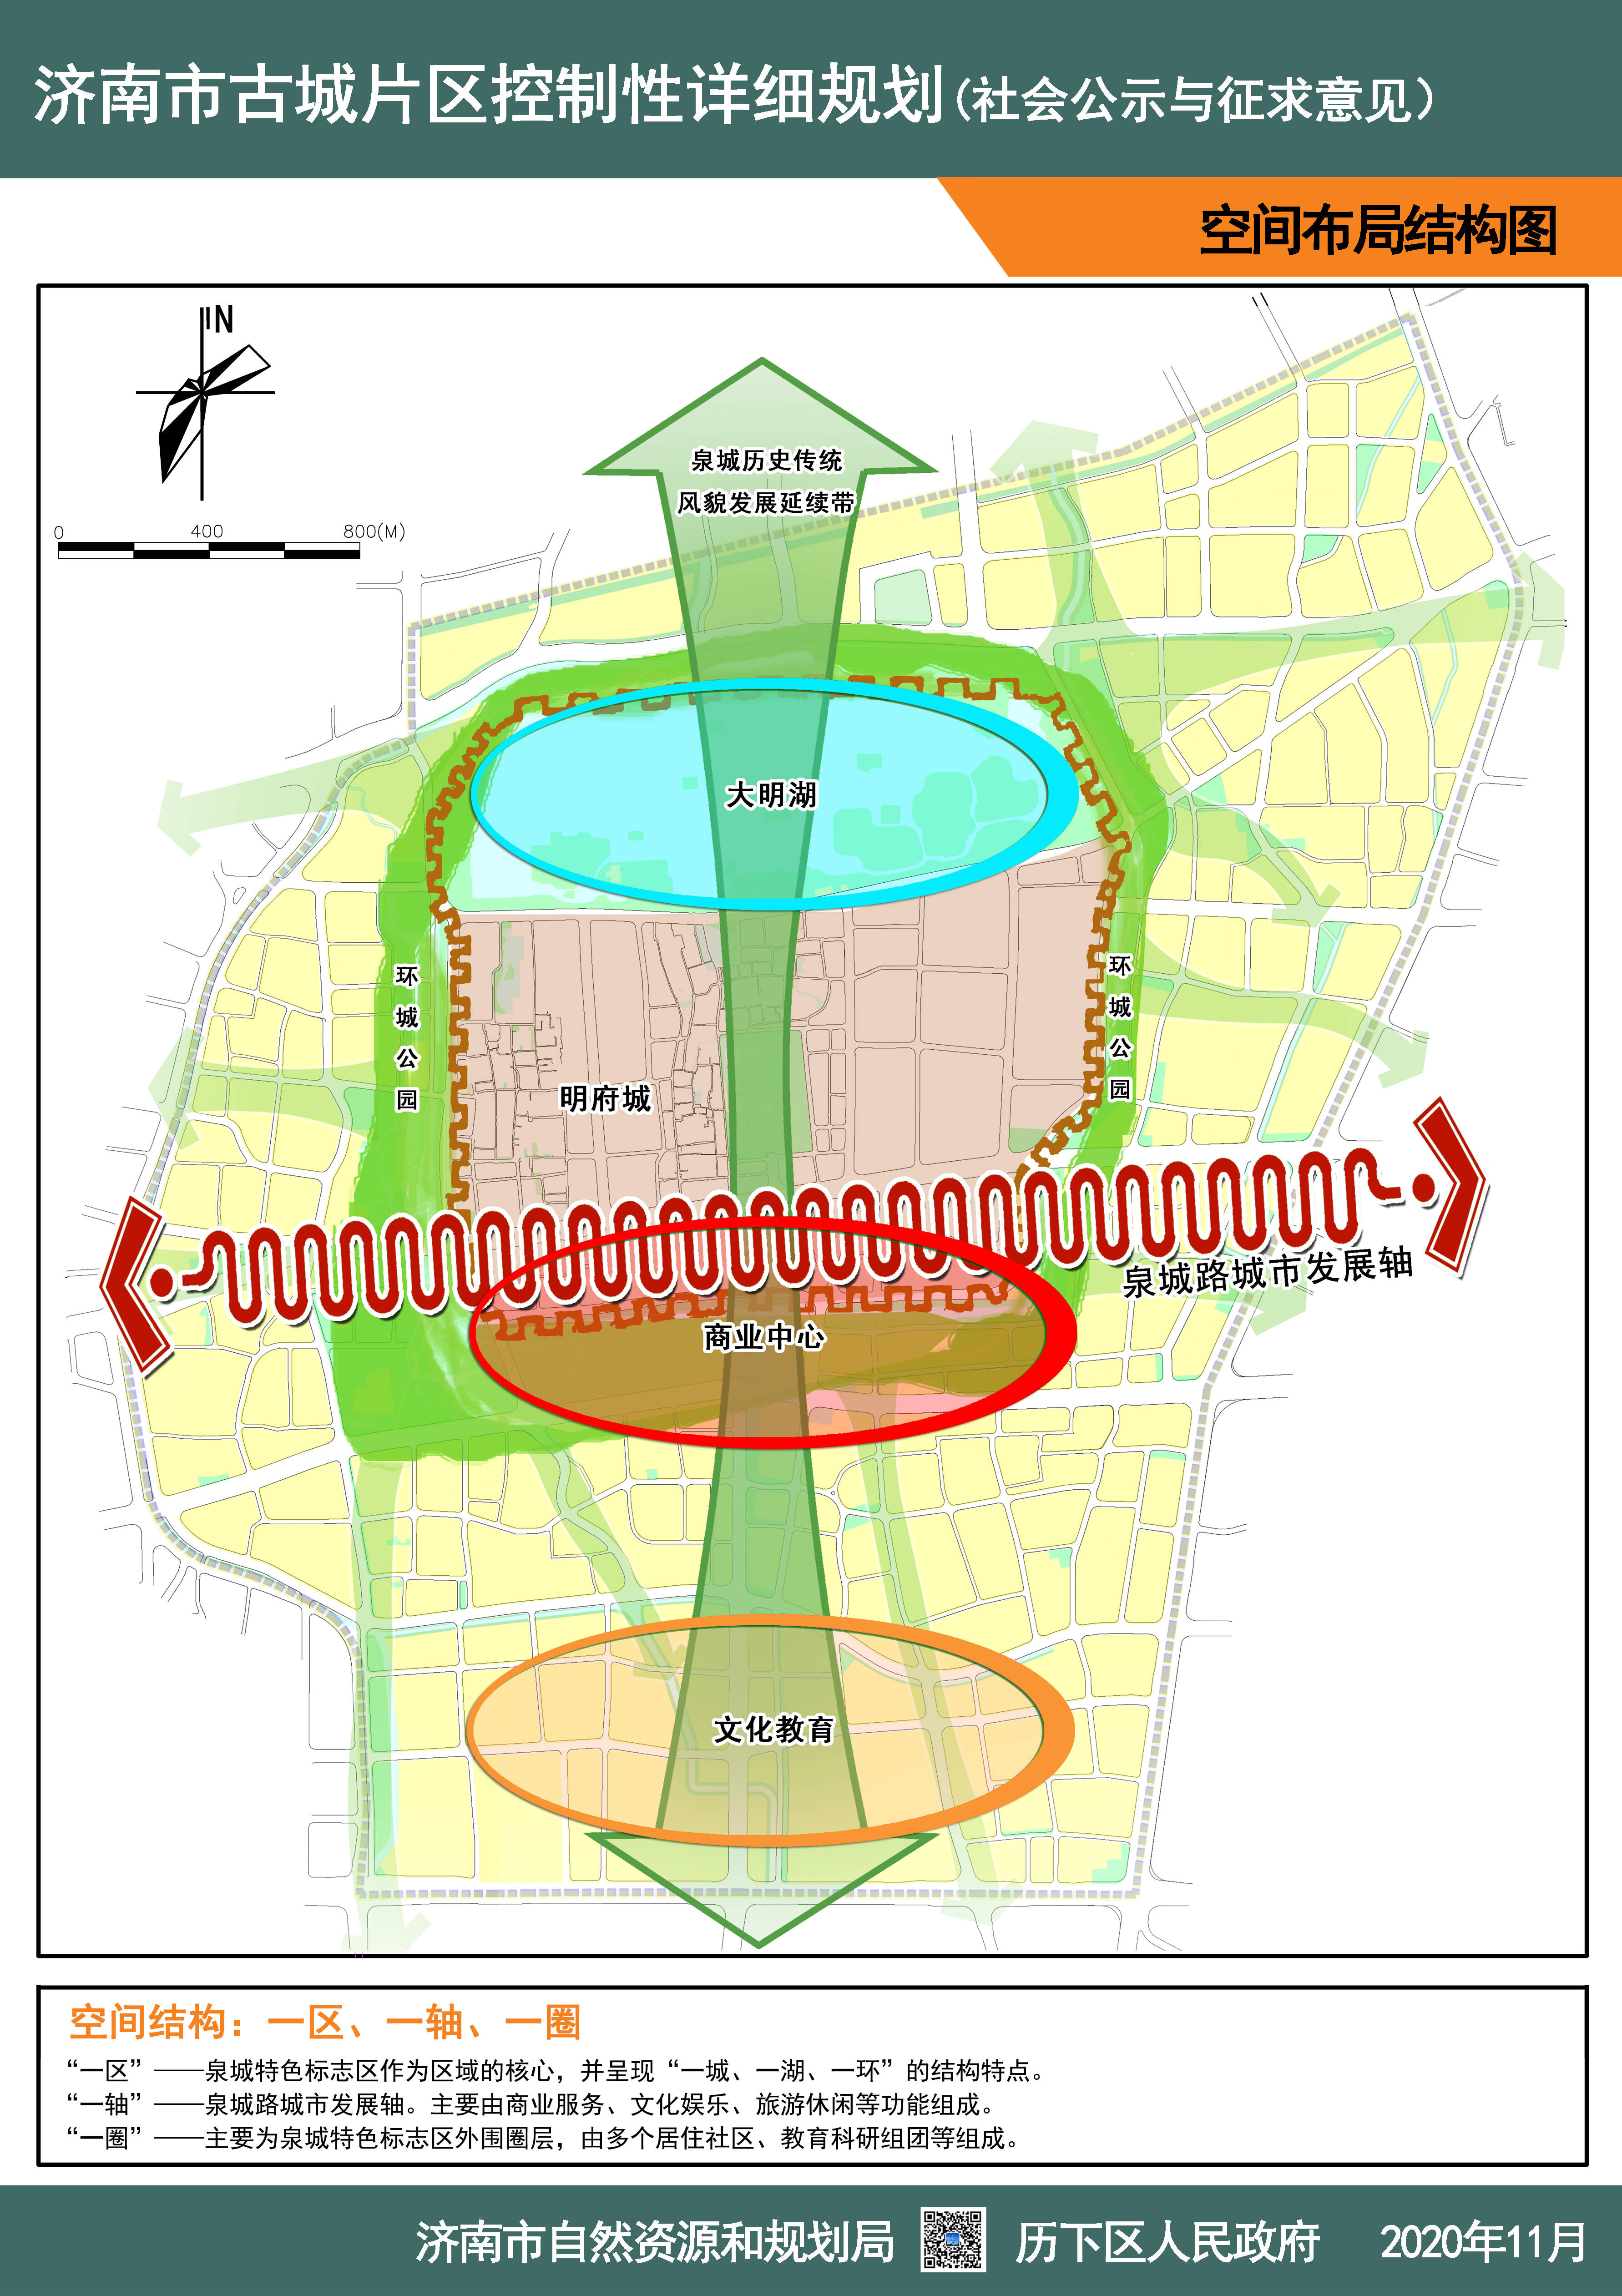 济南市古城片区详细规划出炉趵突泉公园等绿地面积将扩大